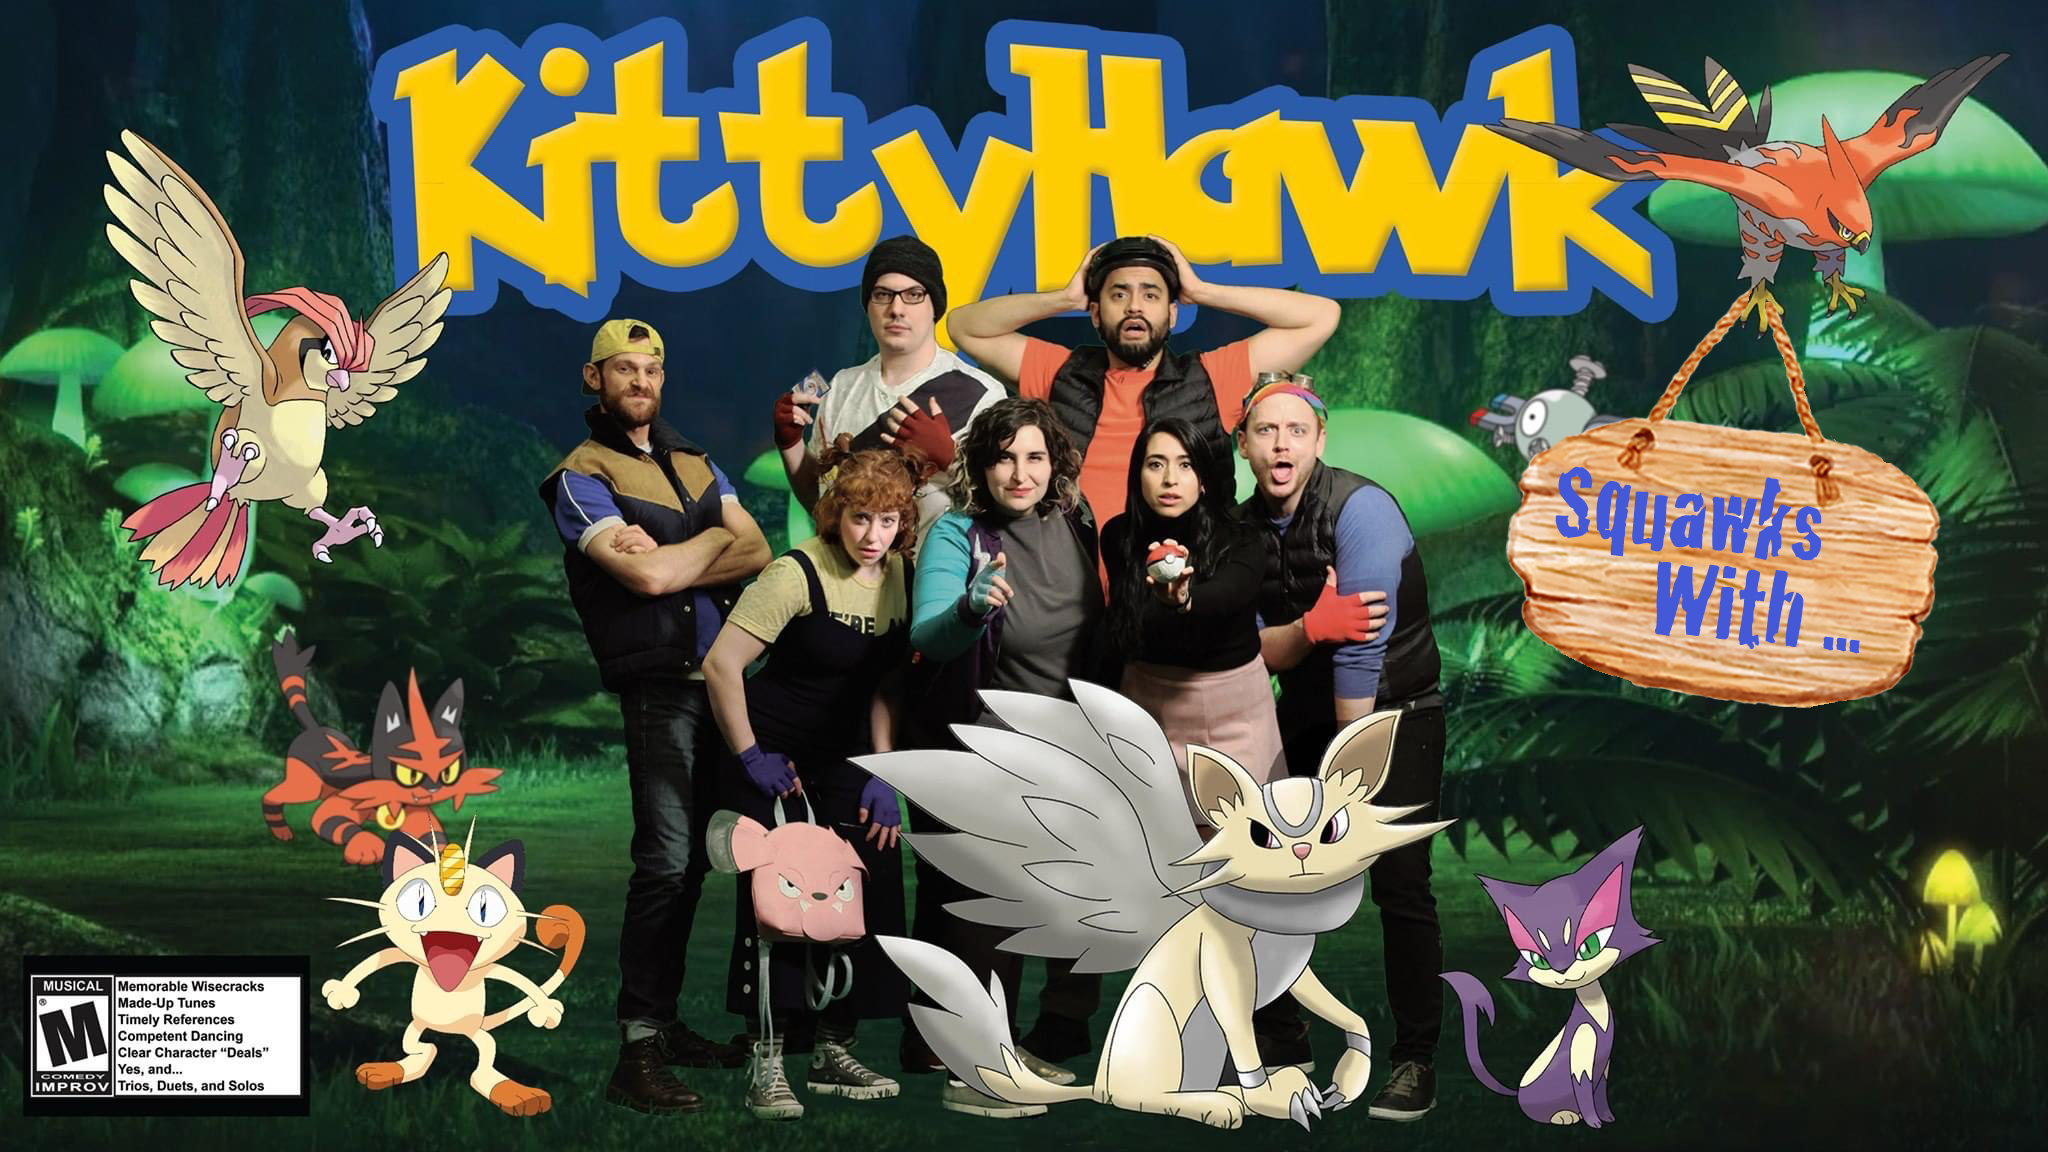 Kittyhawk Squawks With...